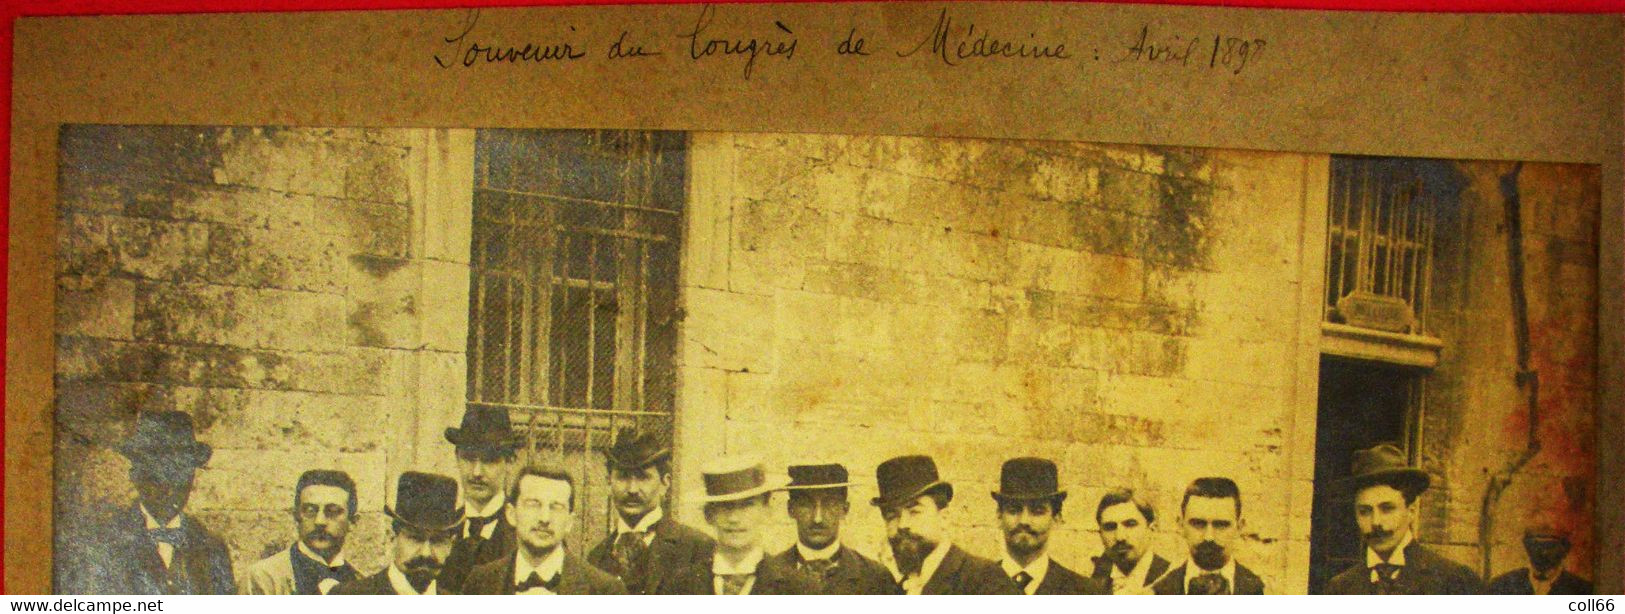 34 Montpellier 1898 RARE Congrès De Médecine 12 Avril Photo Sur Carton 24x21cm Avec Noms Sans éditeur - Old (before 1900)